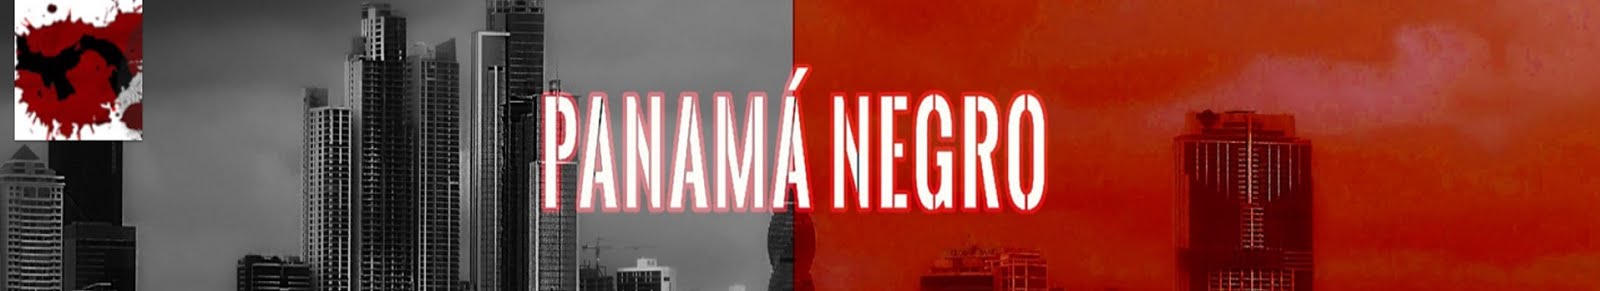 Videos del Panamá Negro 2016